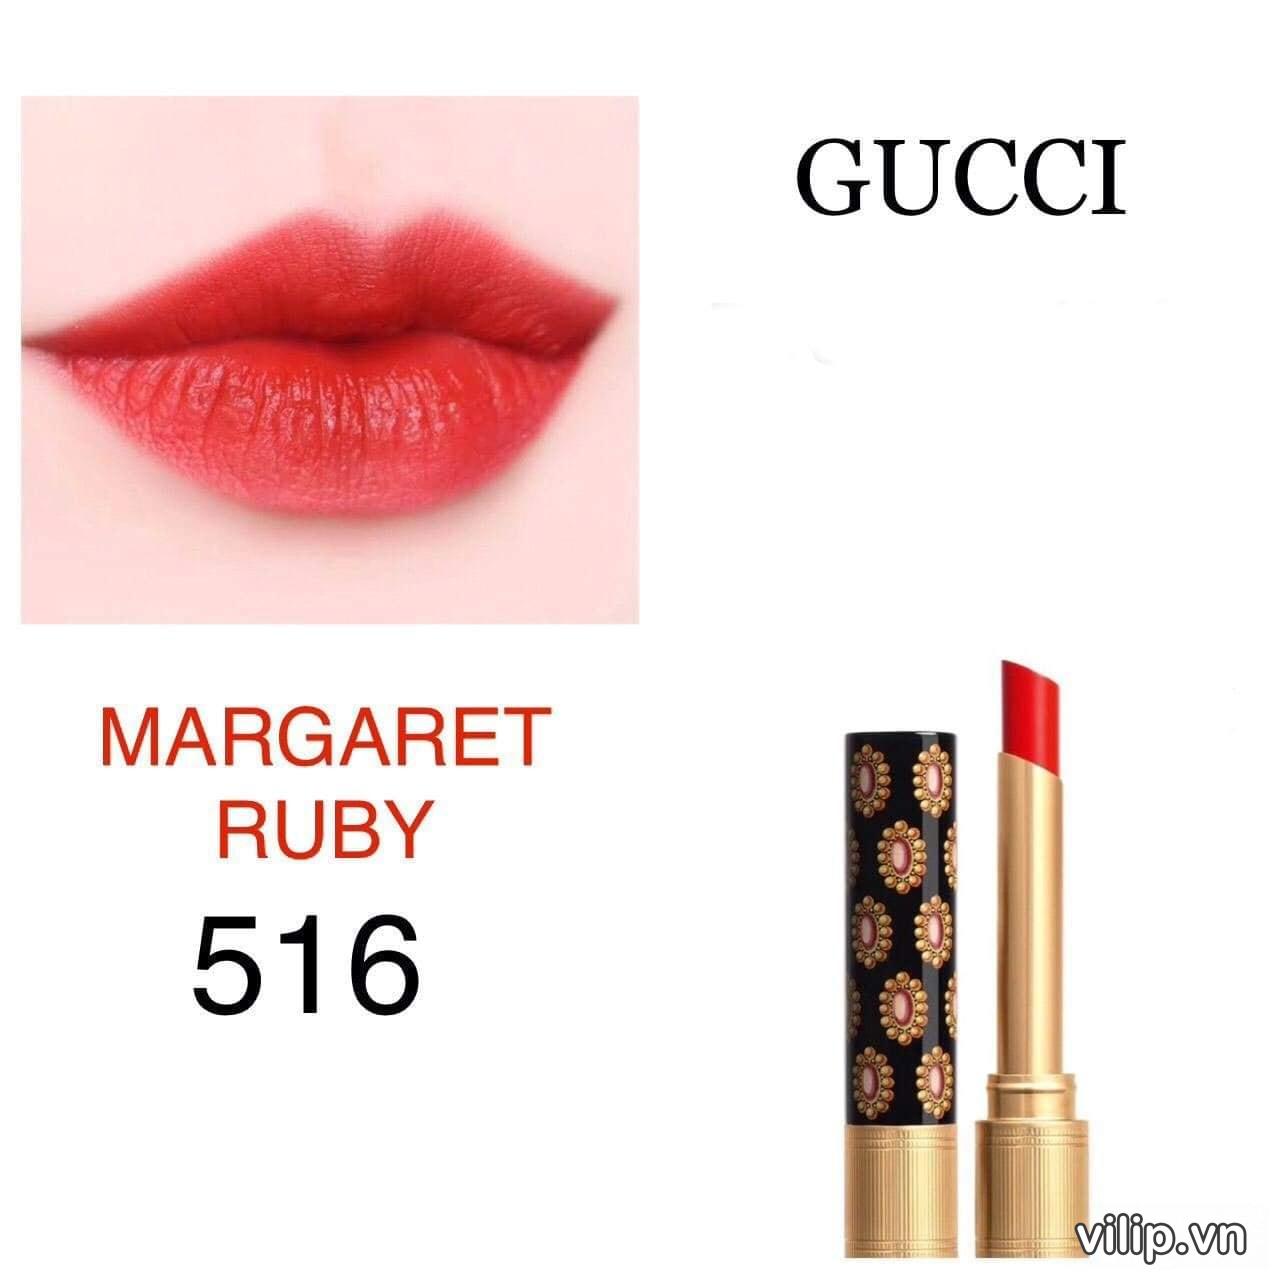 Son Gucci Rouge De Beauté Brillant 516 Margaret Ruby - Màu Đỏ Tươi Ánh Cam  | Vilip Shop - Mỹ Phẩm Chính Hãng